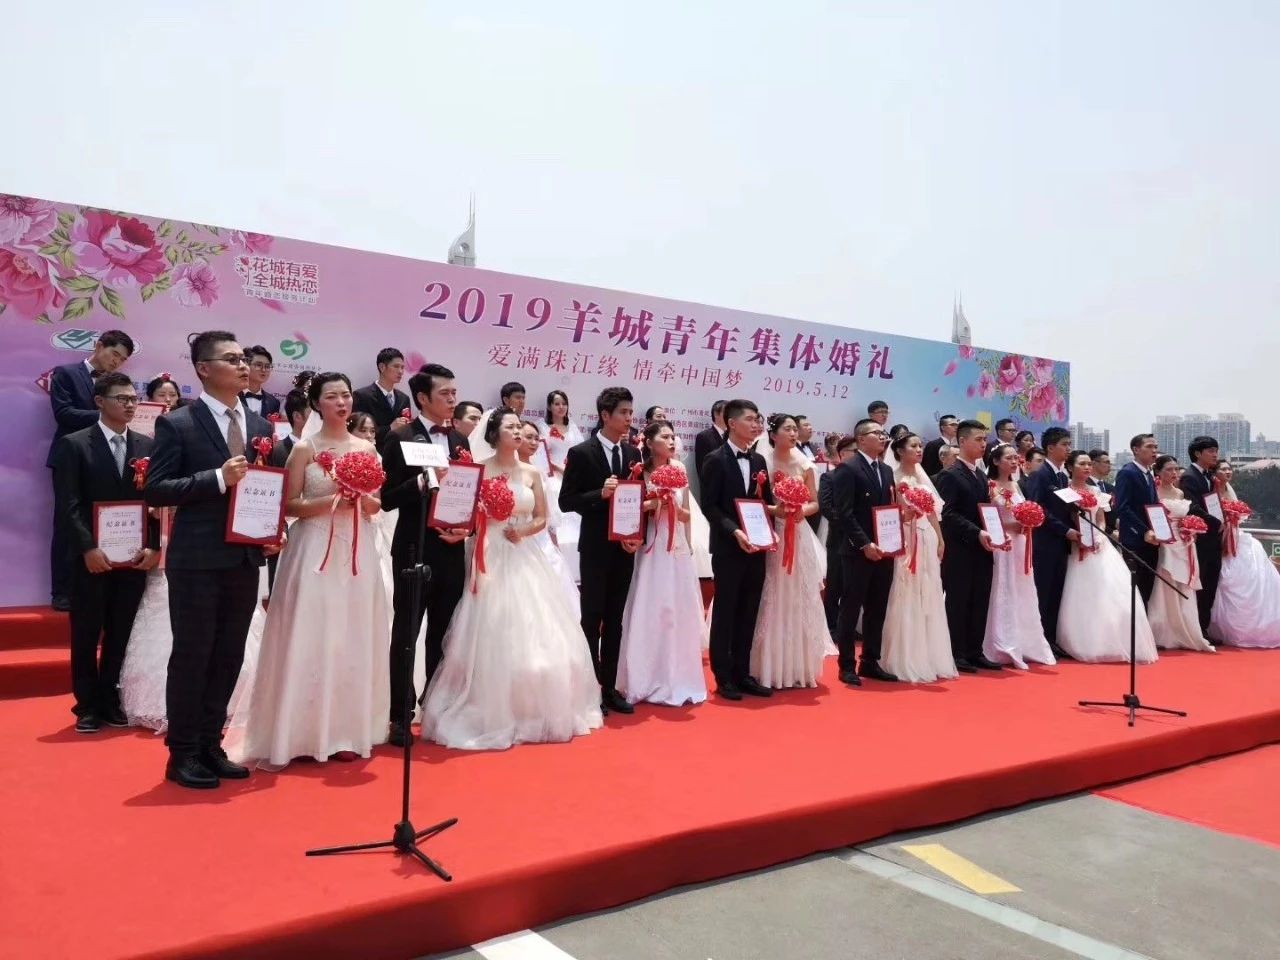 热烈祝贺 | “爱满珠江缘 情牵中国梦”羊城青年集体婚礼圆满成功！